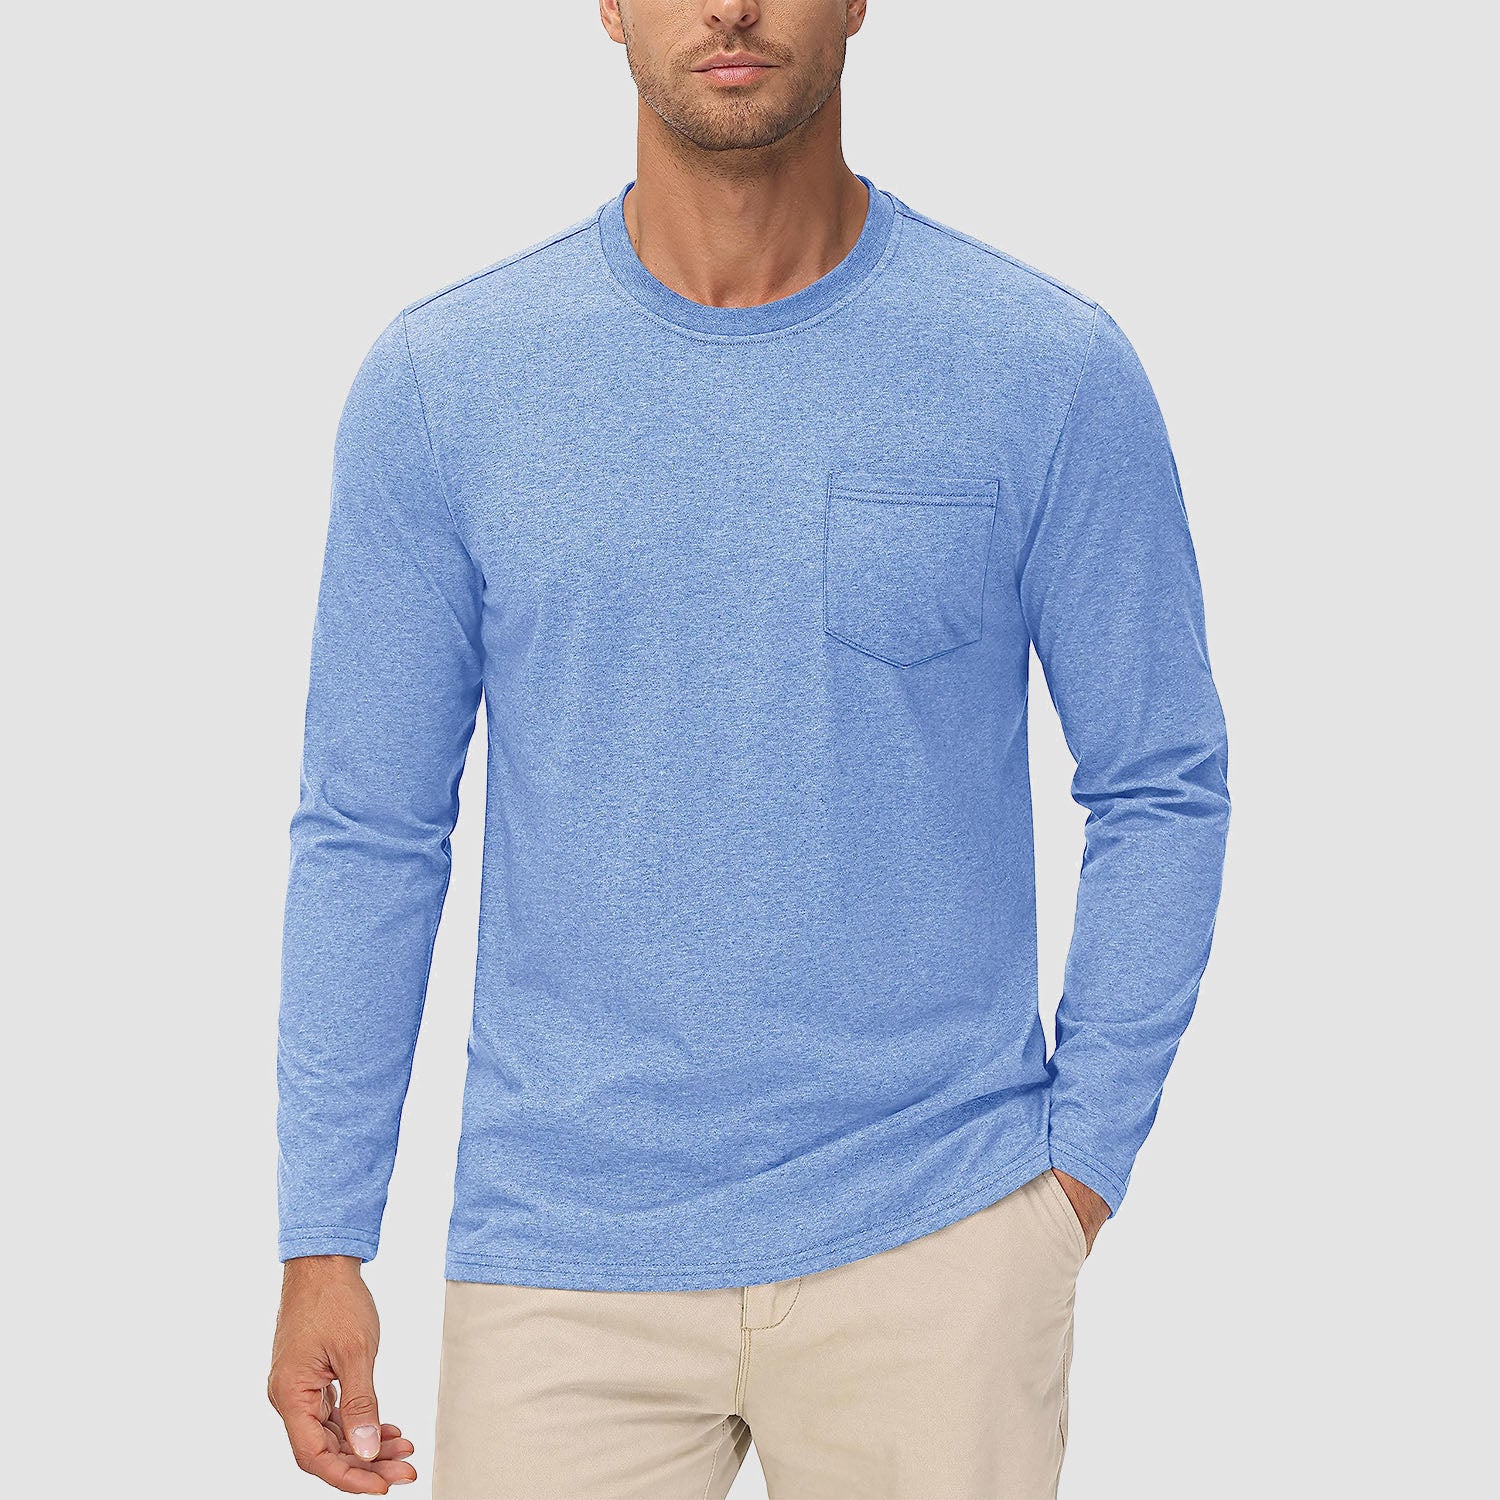 Men's Basic Long Sleeve Shirt Casual Lightweight T-Shirt